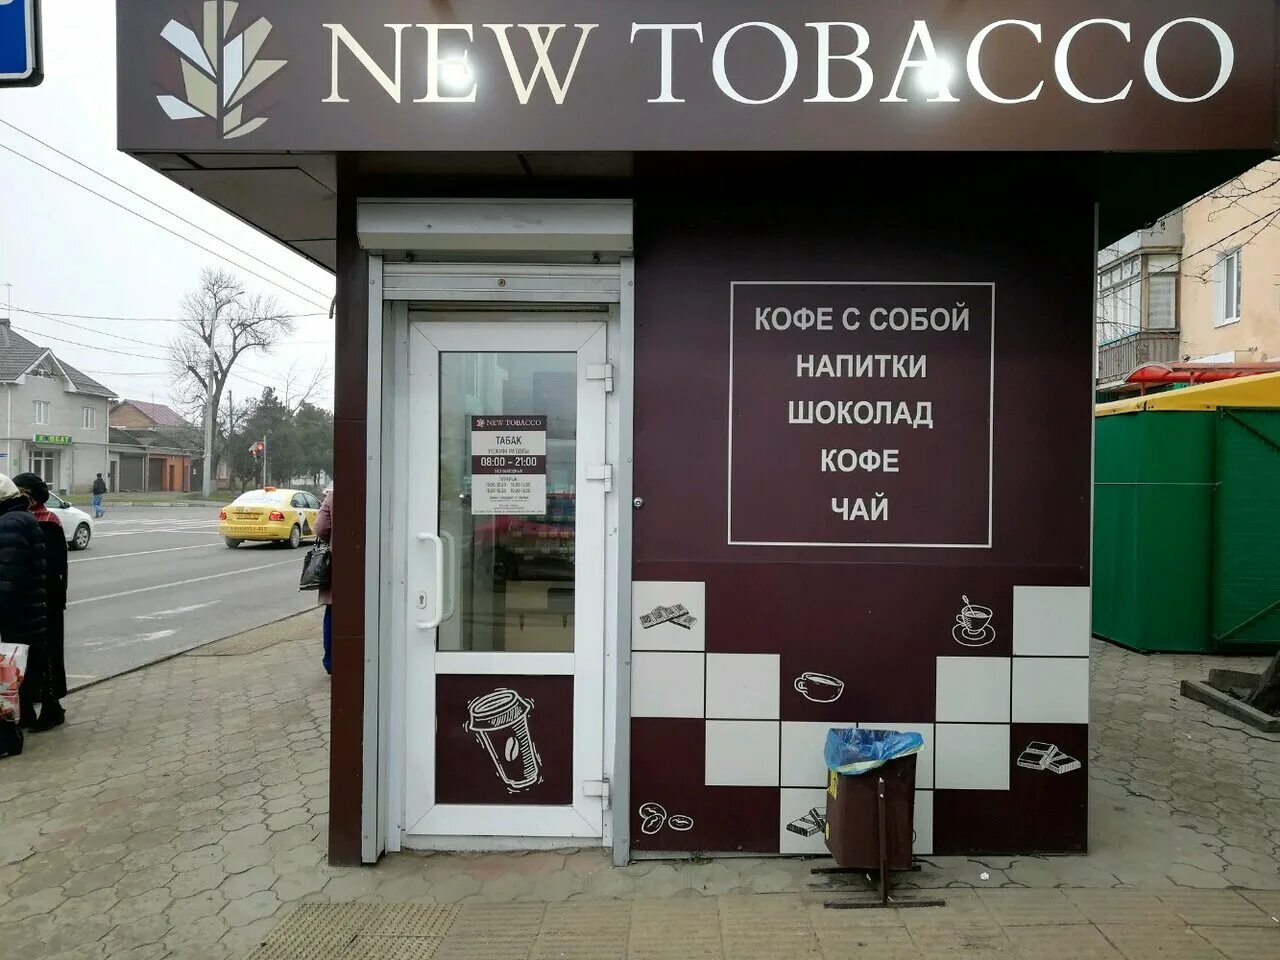 Северная 263 Краснодар. The Tobacco Краснодар. Табак и кофе с собой. Табачные магазины в Краснодаре.